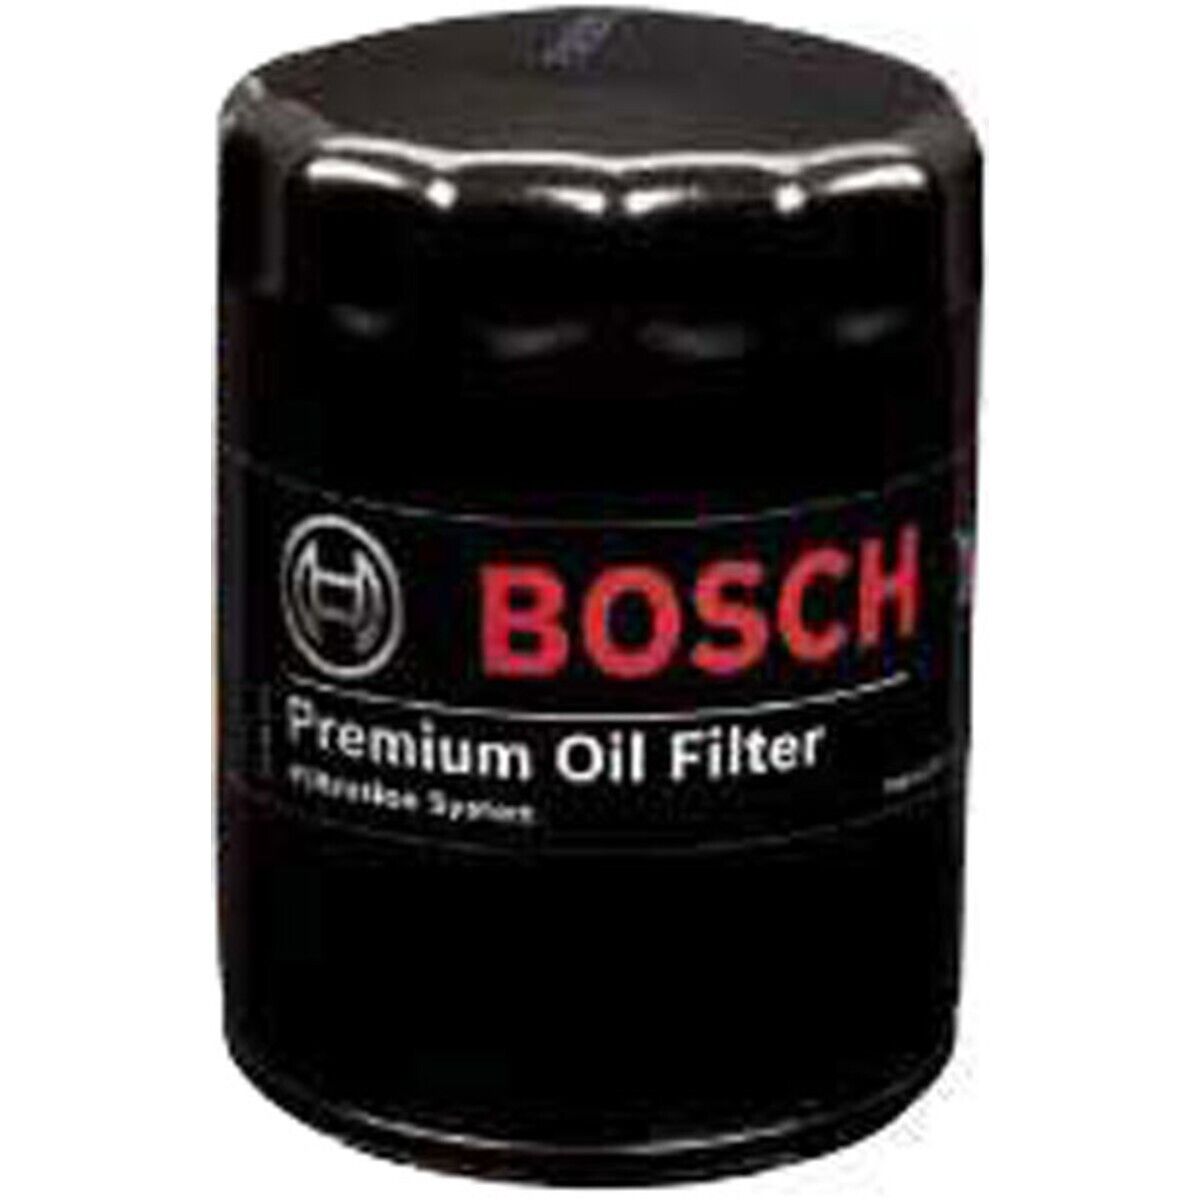 3520 Bosch Oil Filter for Ram Truck 2500 Dodge 3500 D250 D350 W350 4500 5500